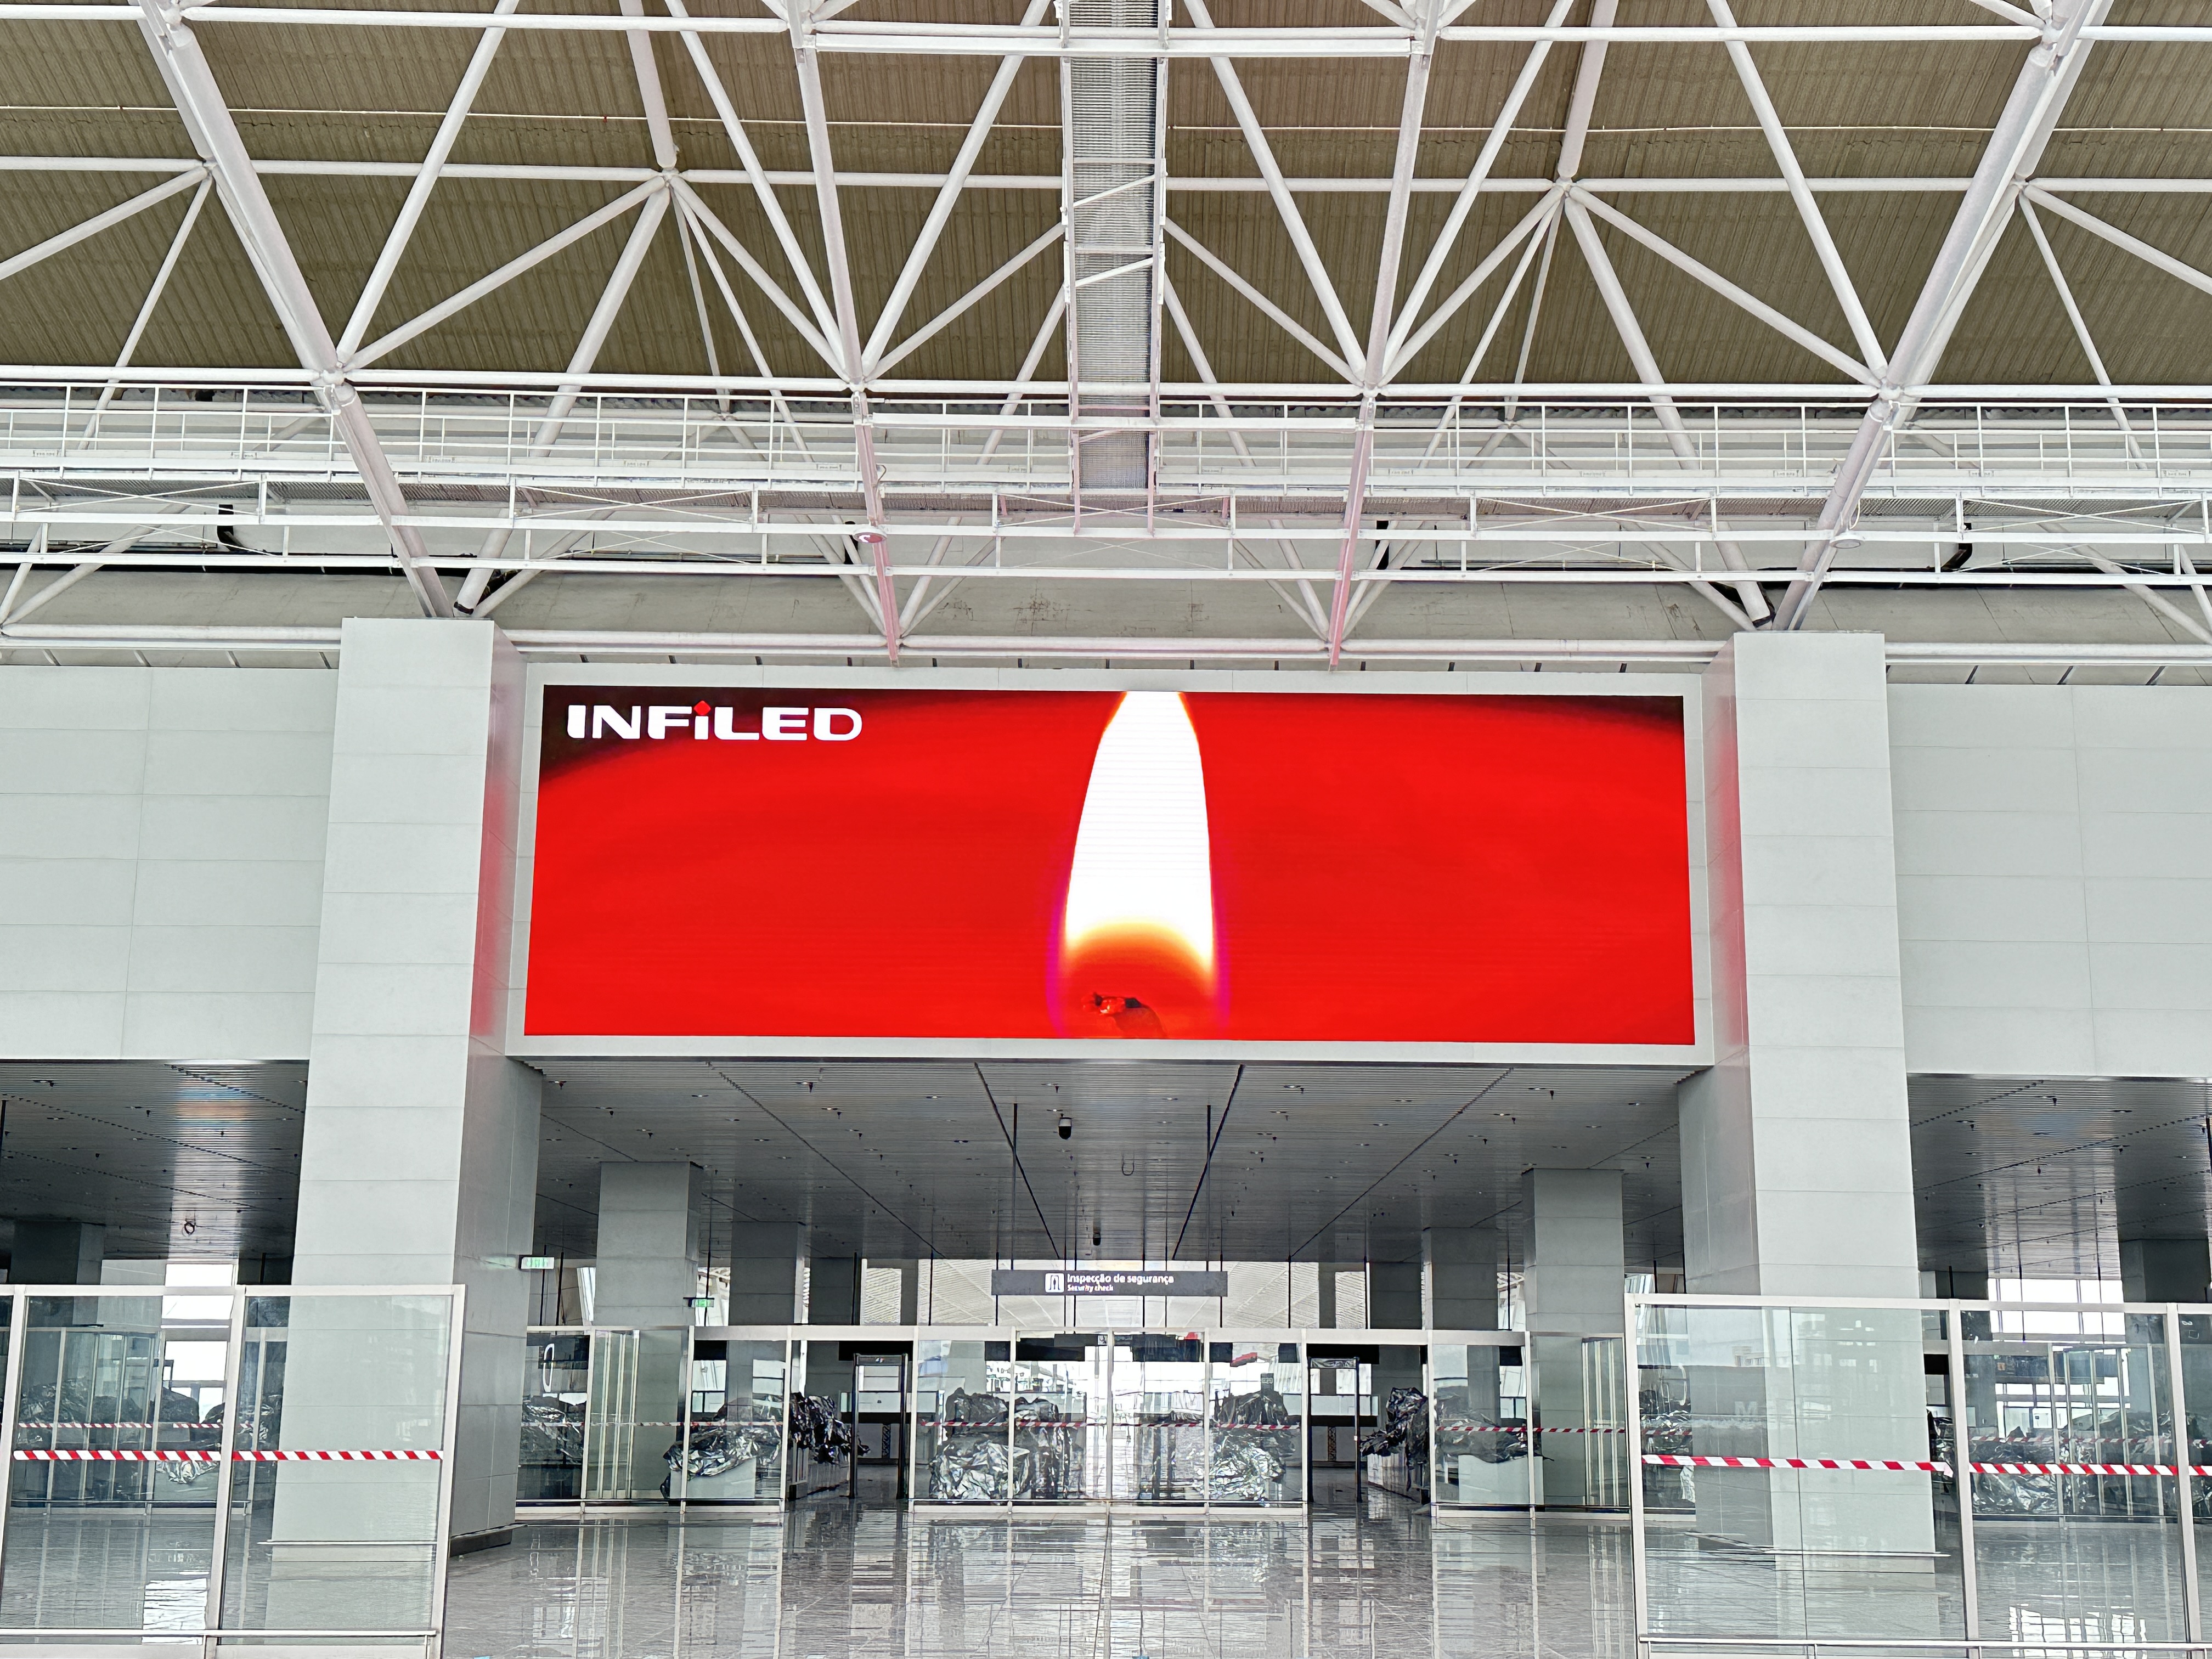 视爵光旭安哥拉内图博士国际机场LED显示屏项目国际、国内安检口上方的LED显示屏